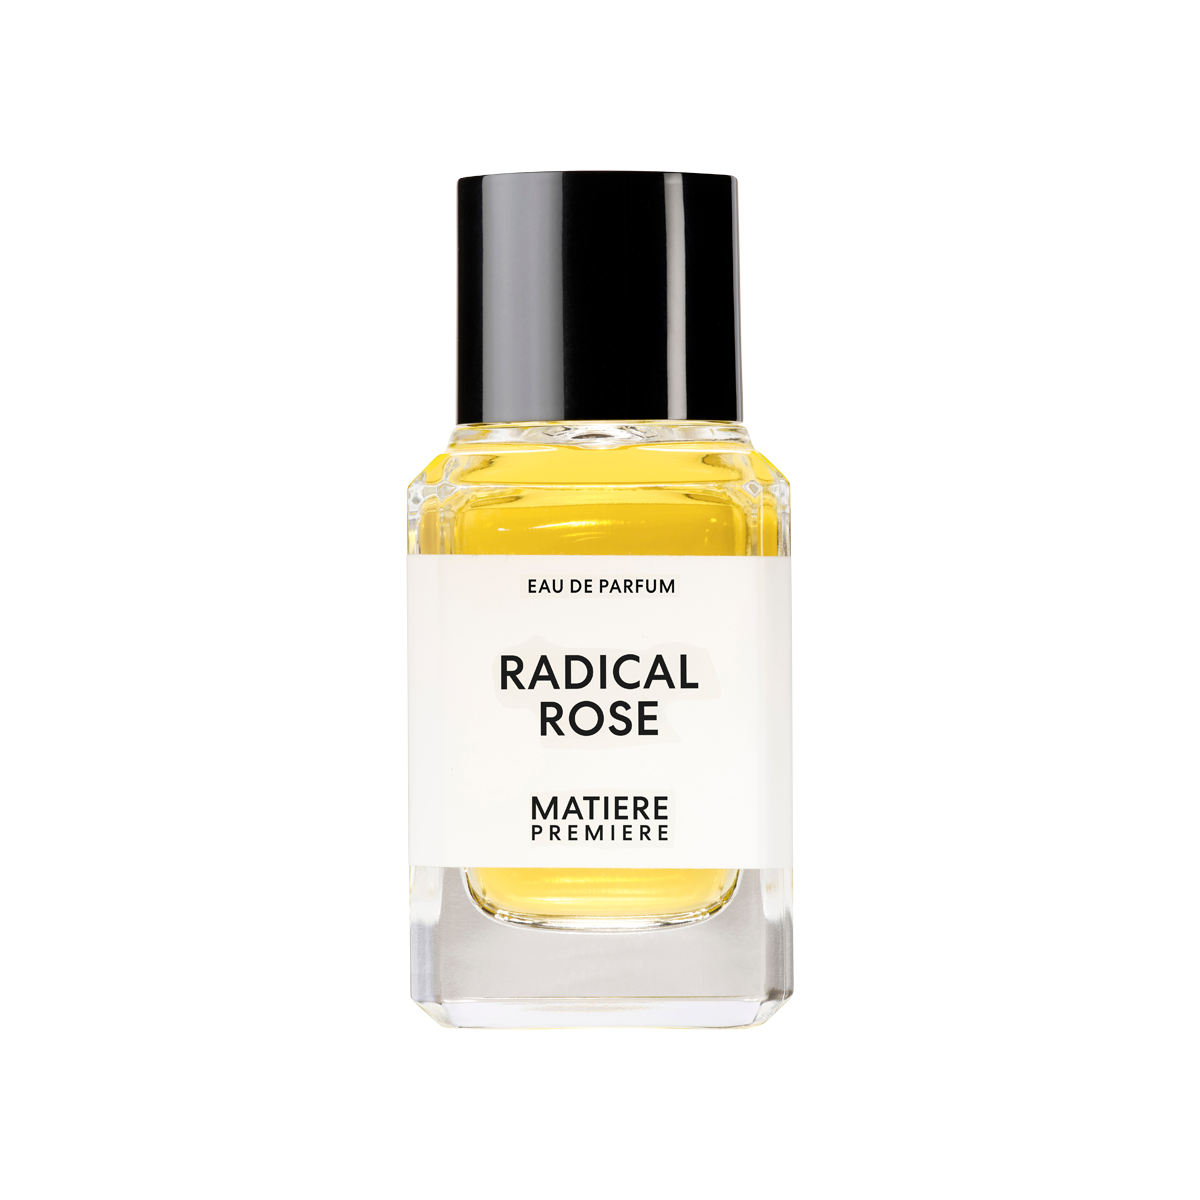 Matiere Premiere - Radical Rose Eau de Parfum